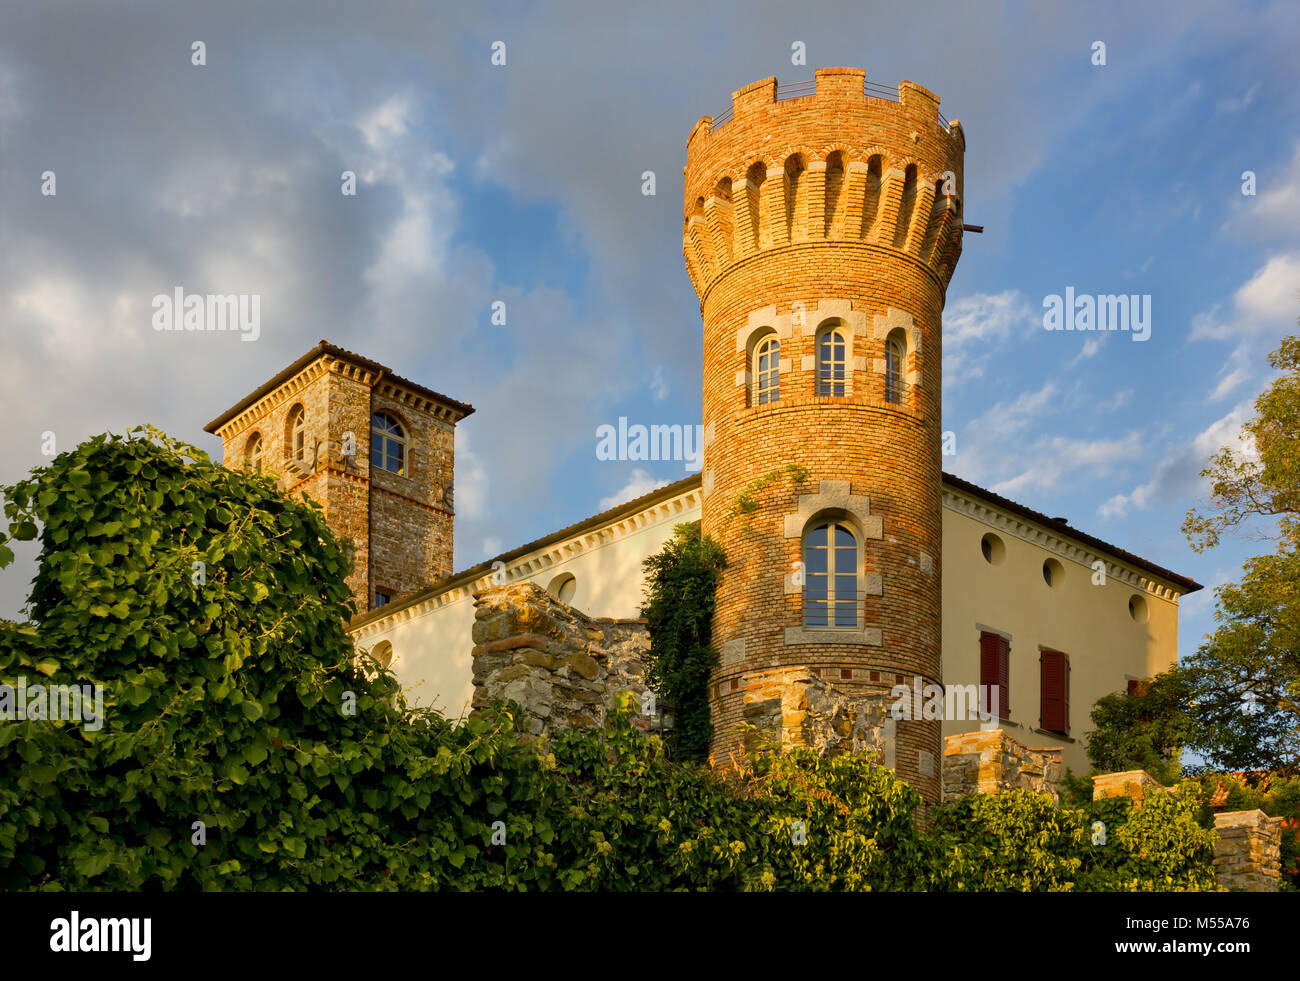 BUTTRIO, Italia - Settembre 2013: vista del castello di Buttrio al tramonto, in una produzione di vino di territorio della regione Friuli Venezia Giulia. Foto Stock